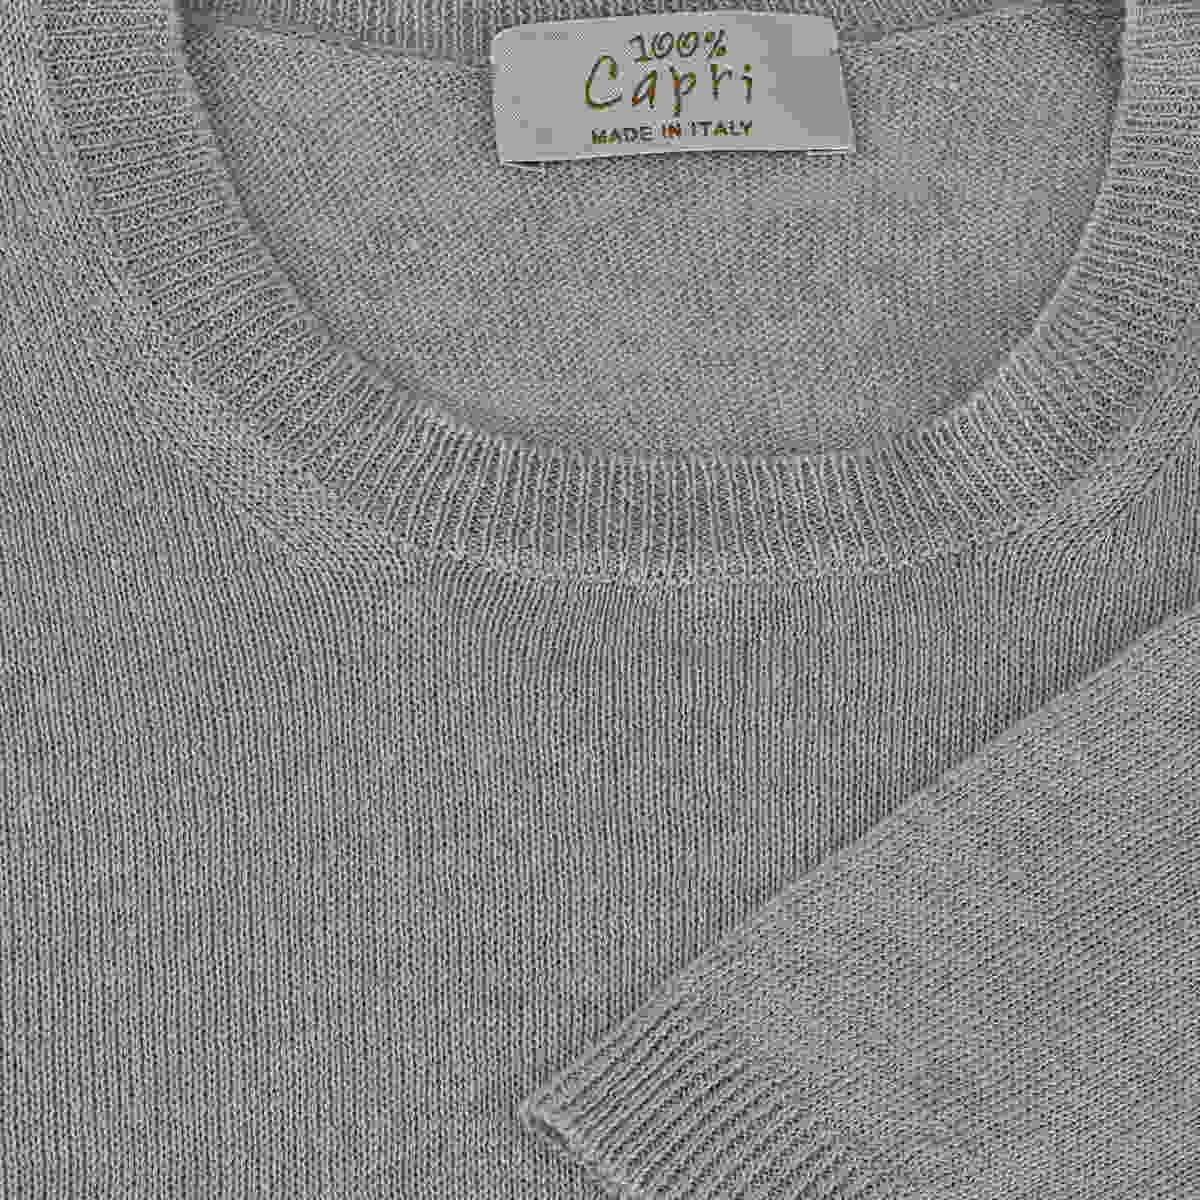 T-Shirt M/C 100% Capri light grey linen t-shirt detail